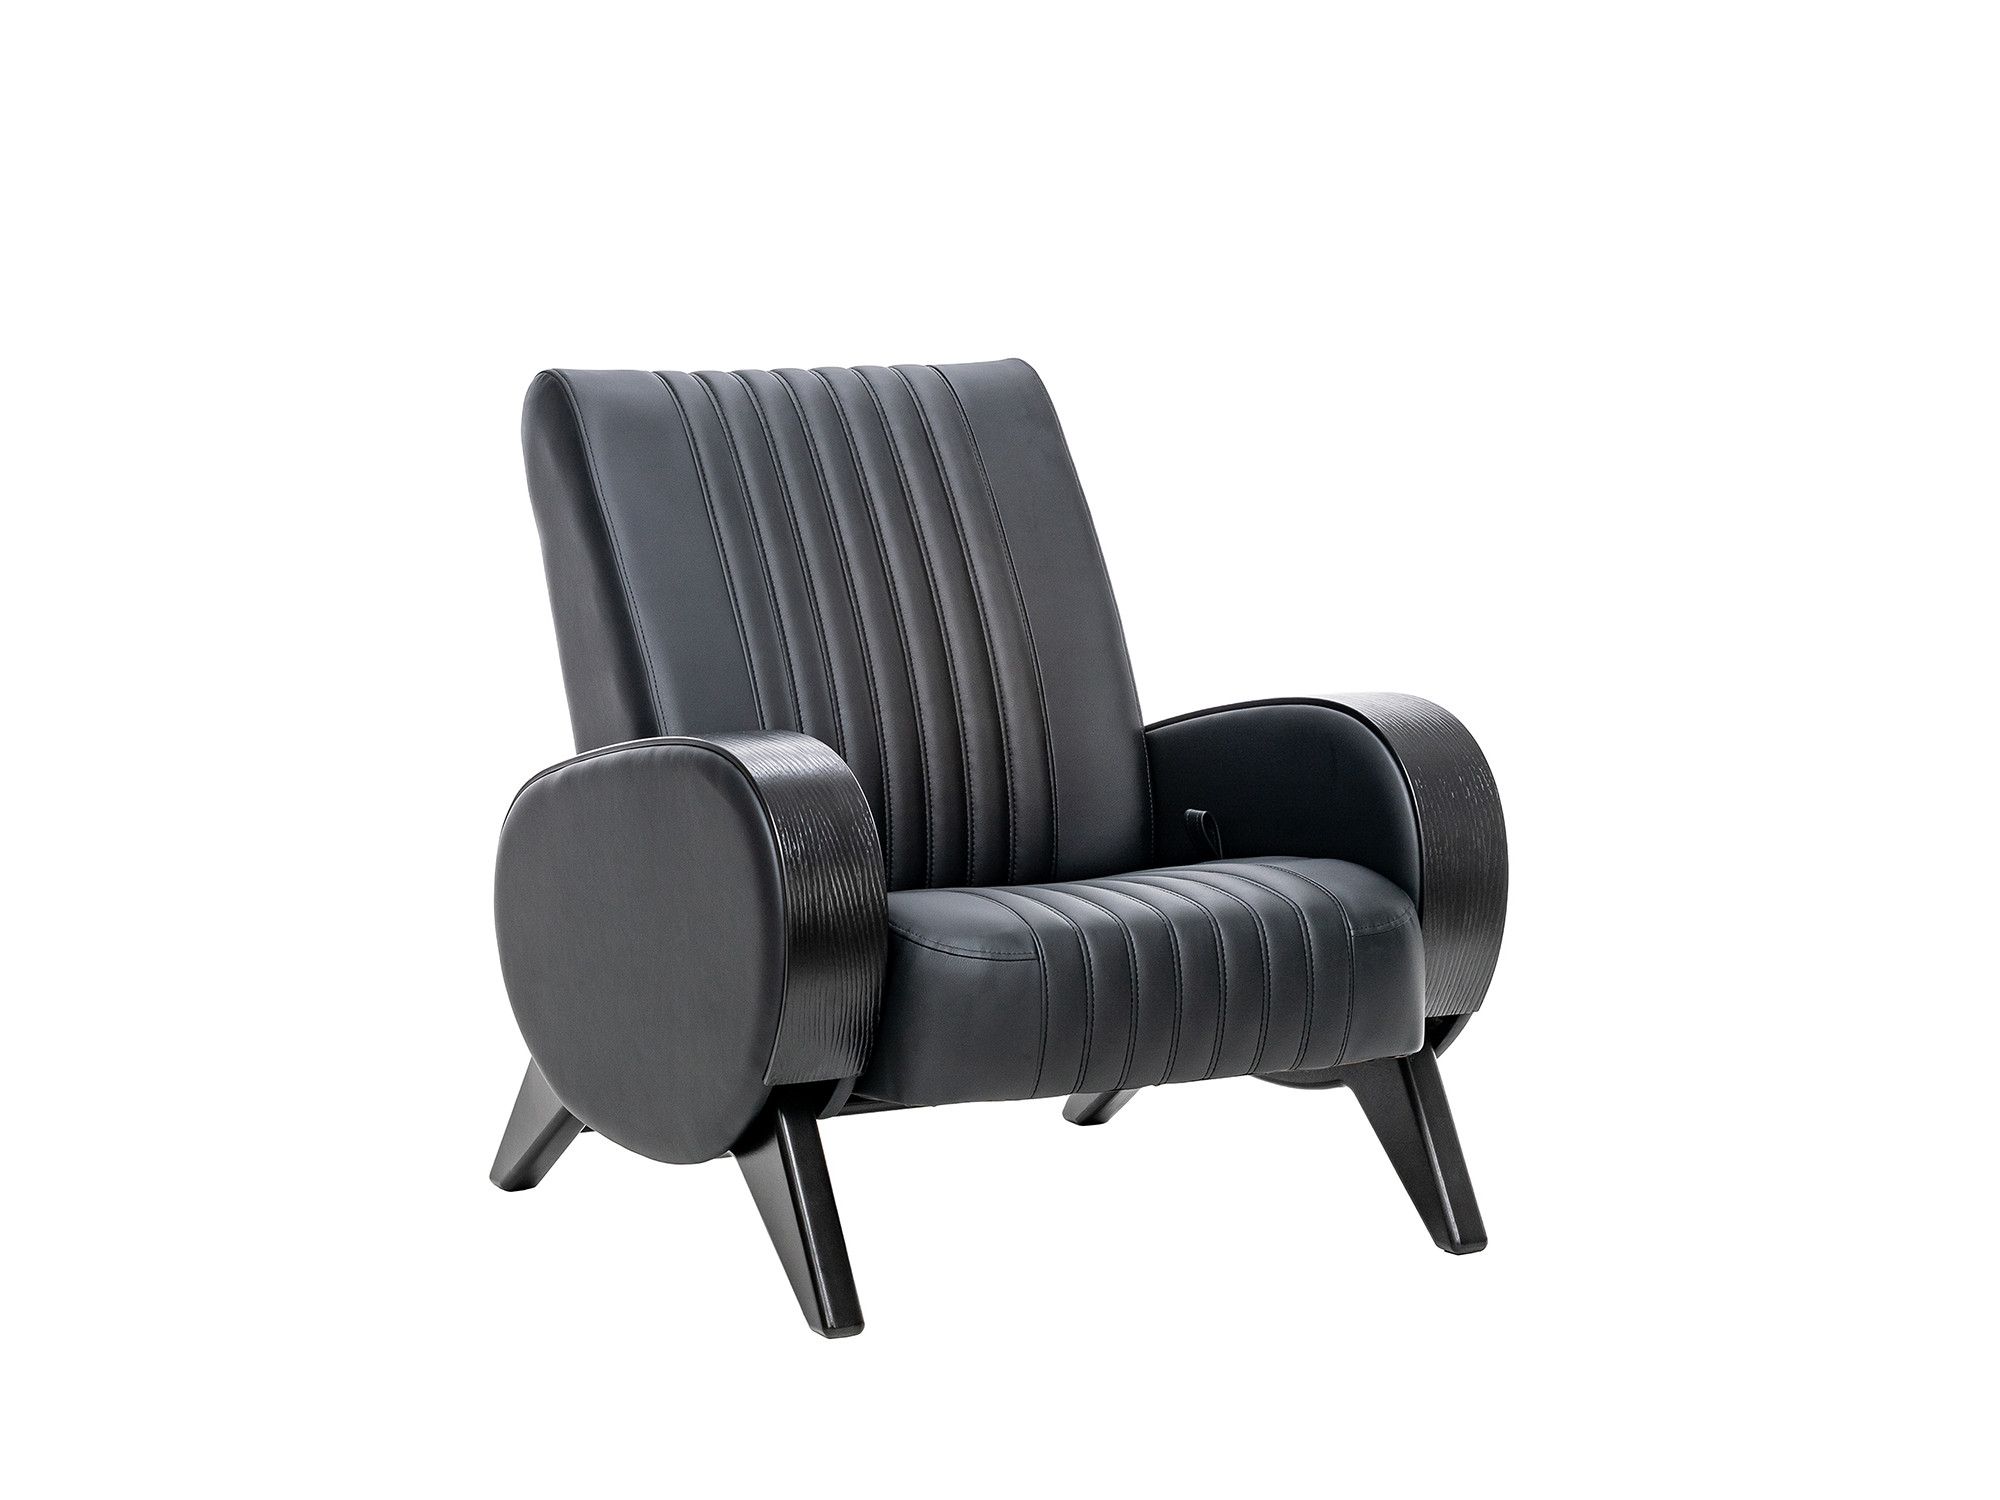 Кресло-глайдер Персона Люкс MebelVia Madryt 9100, Экокожа, покрыта эмалью, Берёзовая фанера кресло глайдер персона кресло глайдер персона